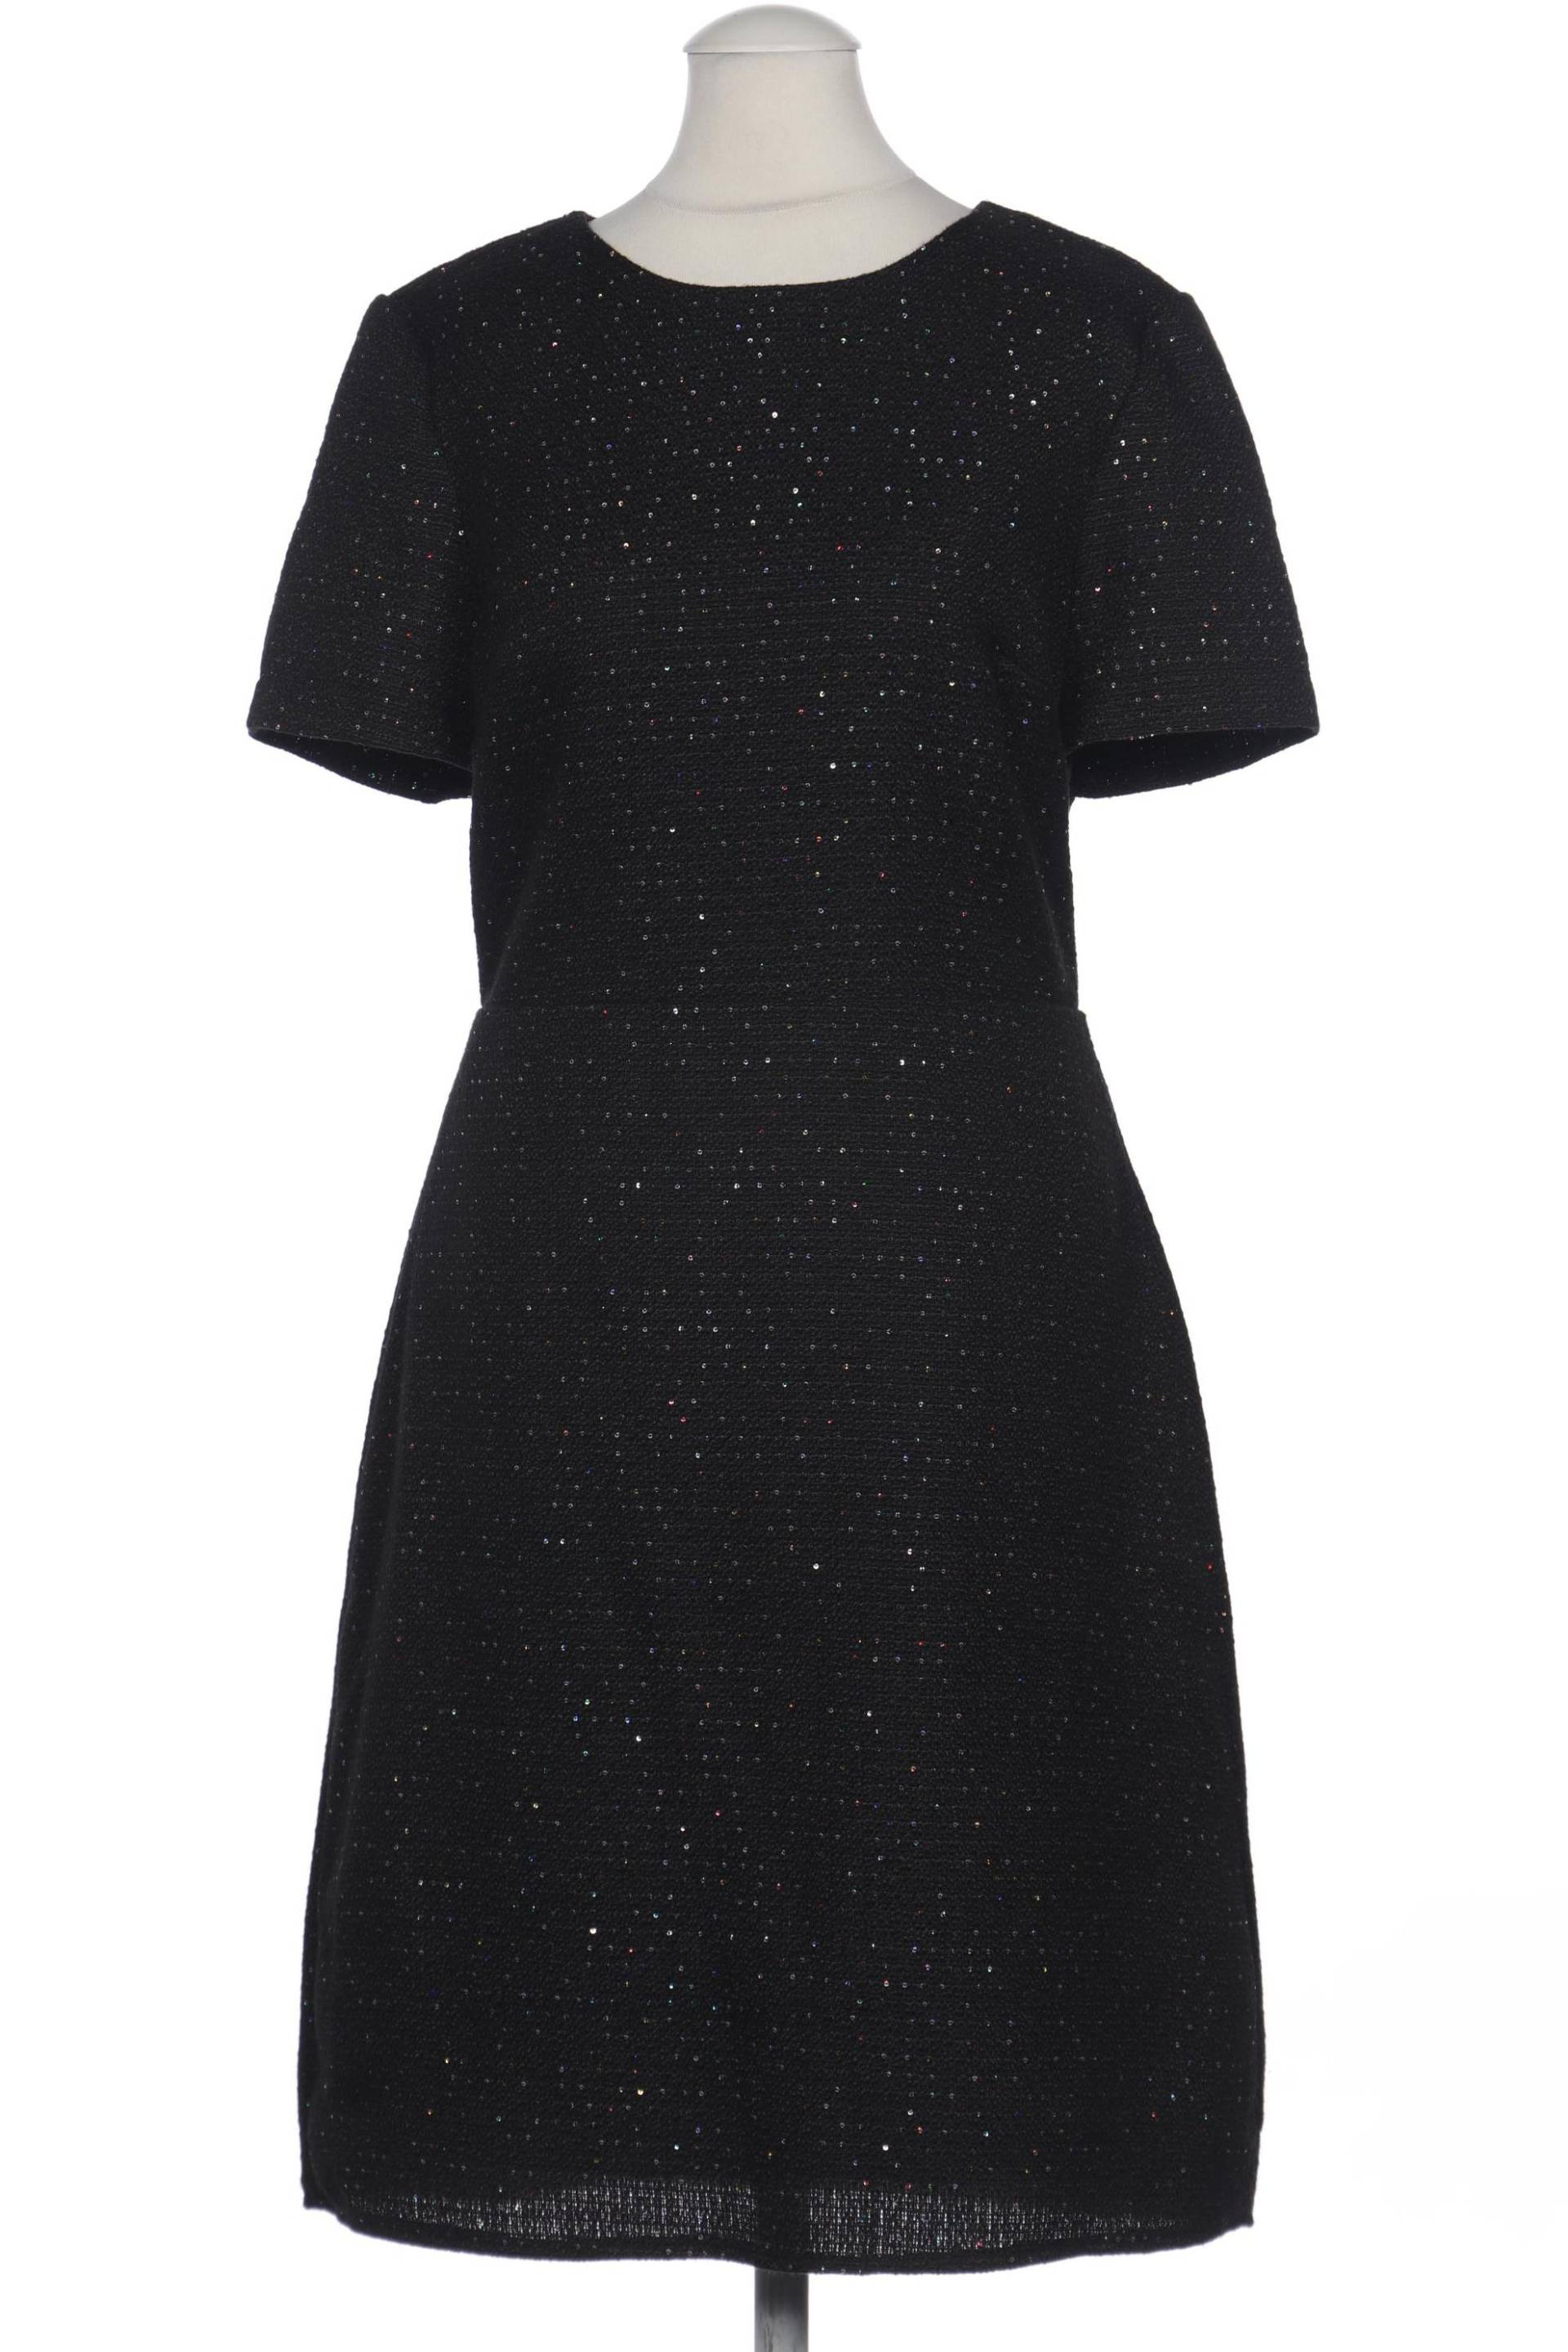 oasis Damen Kleid, schwarz, Gr. 36 von Oasis